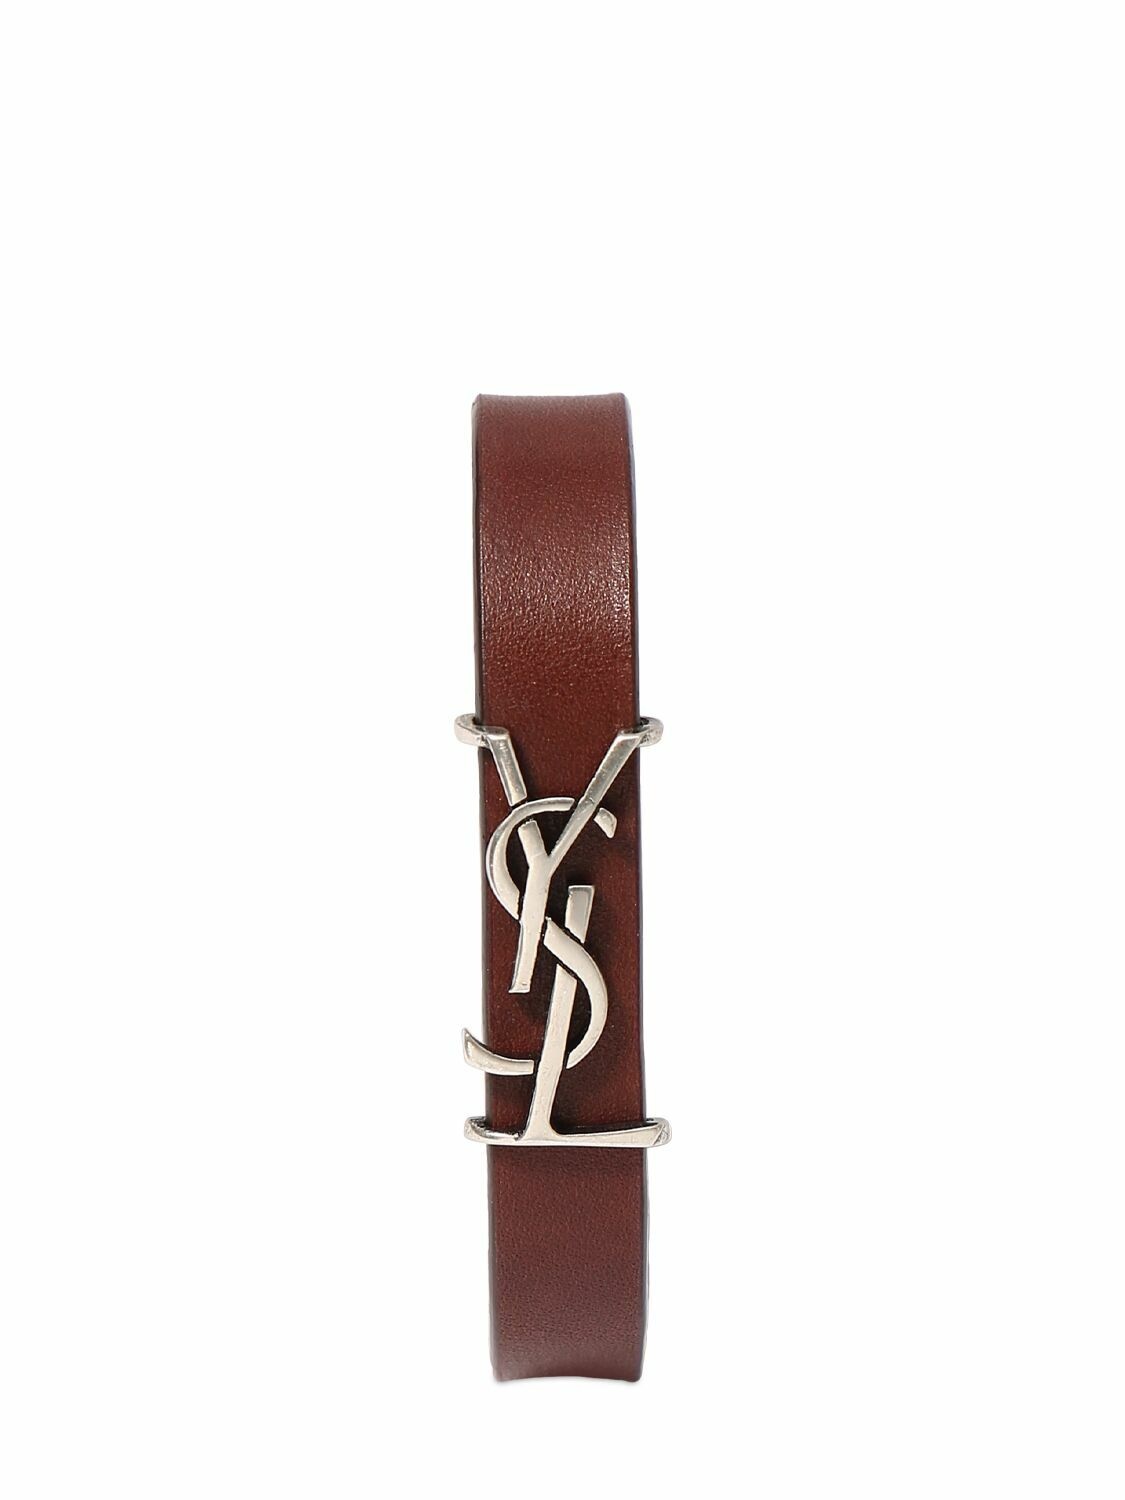 Photo: SAINT LAURENT - Ysl Single Wrap Leather Bracelet